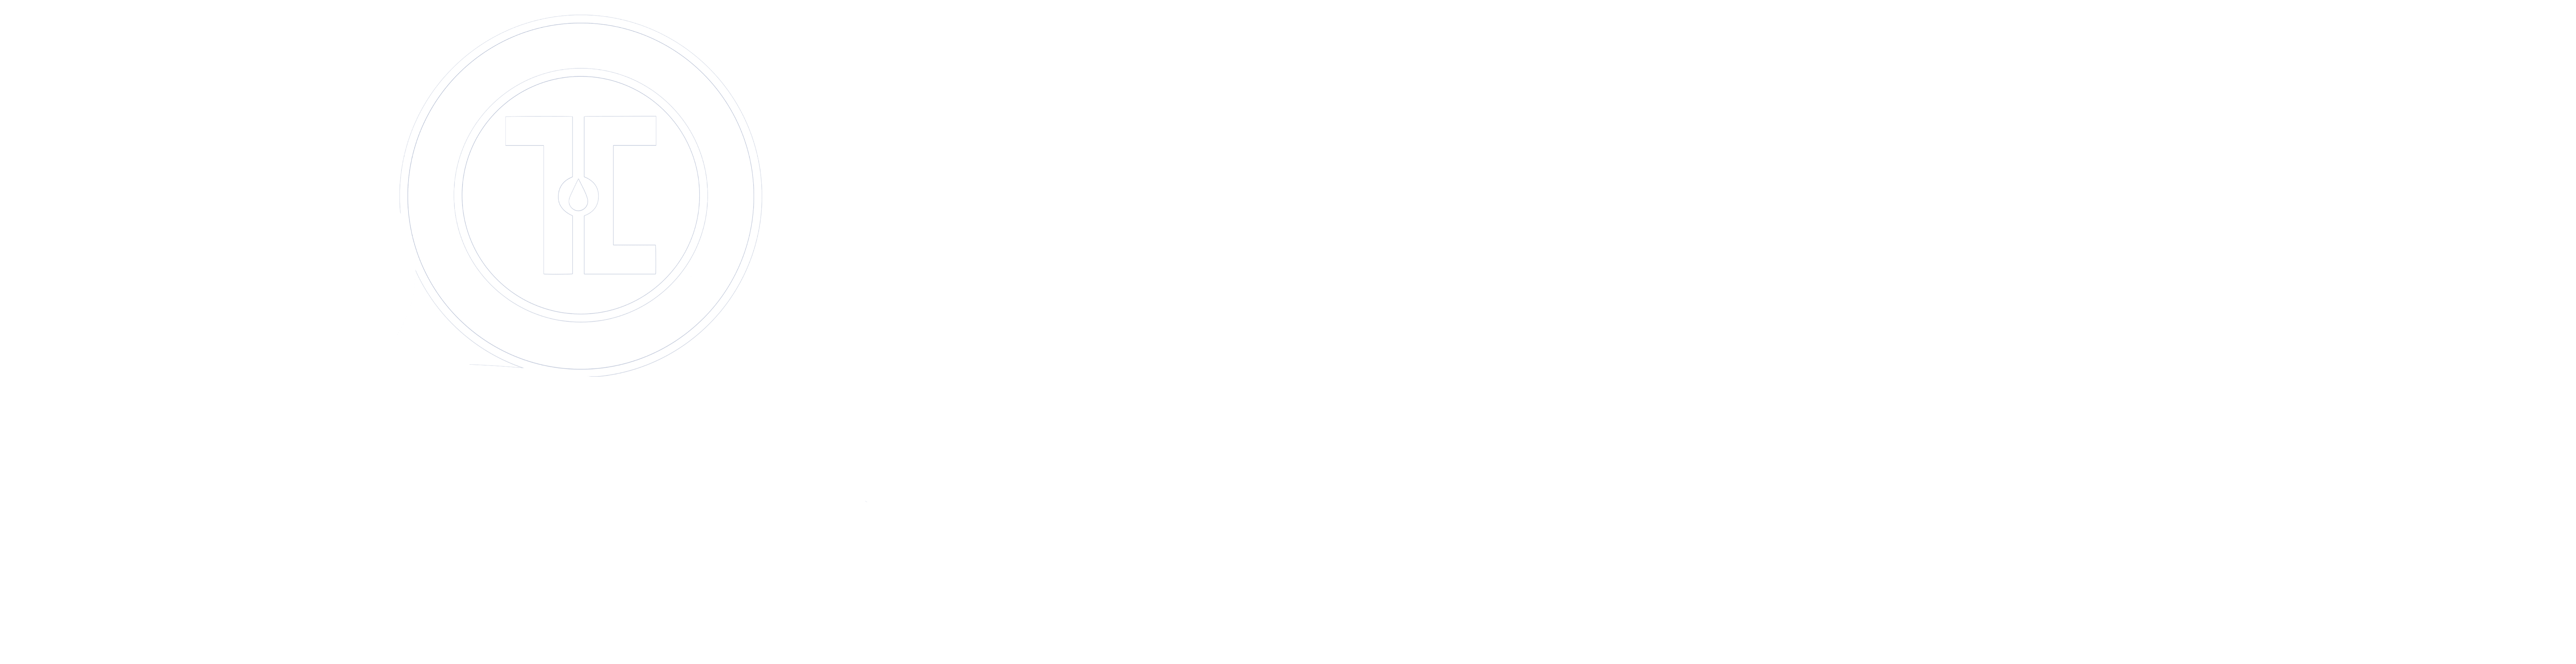 50 Years Touro University